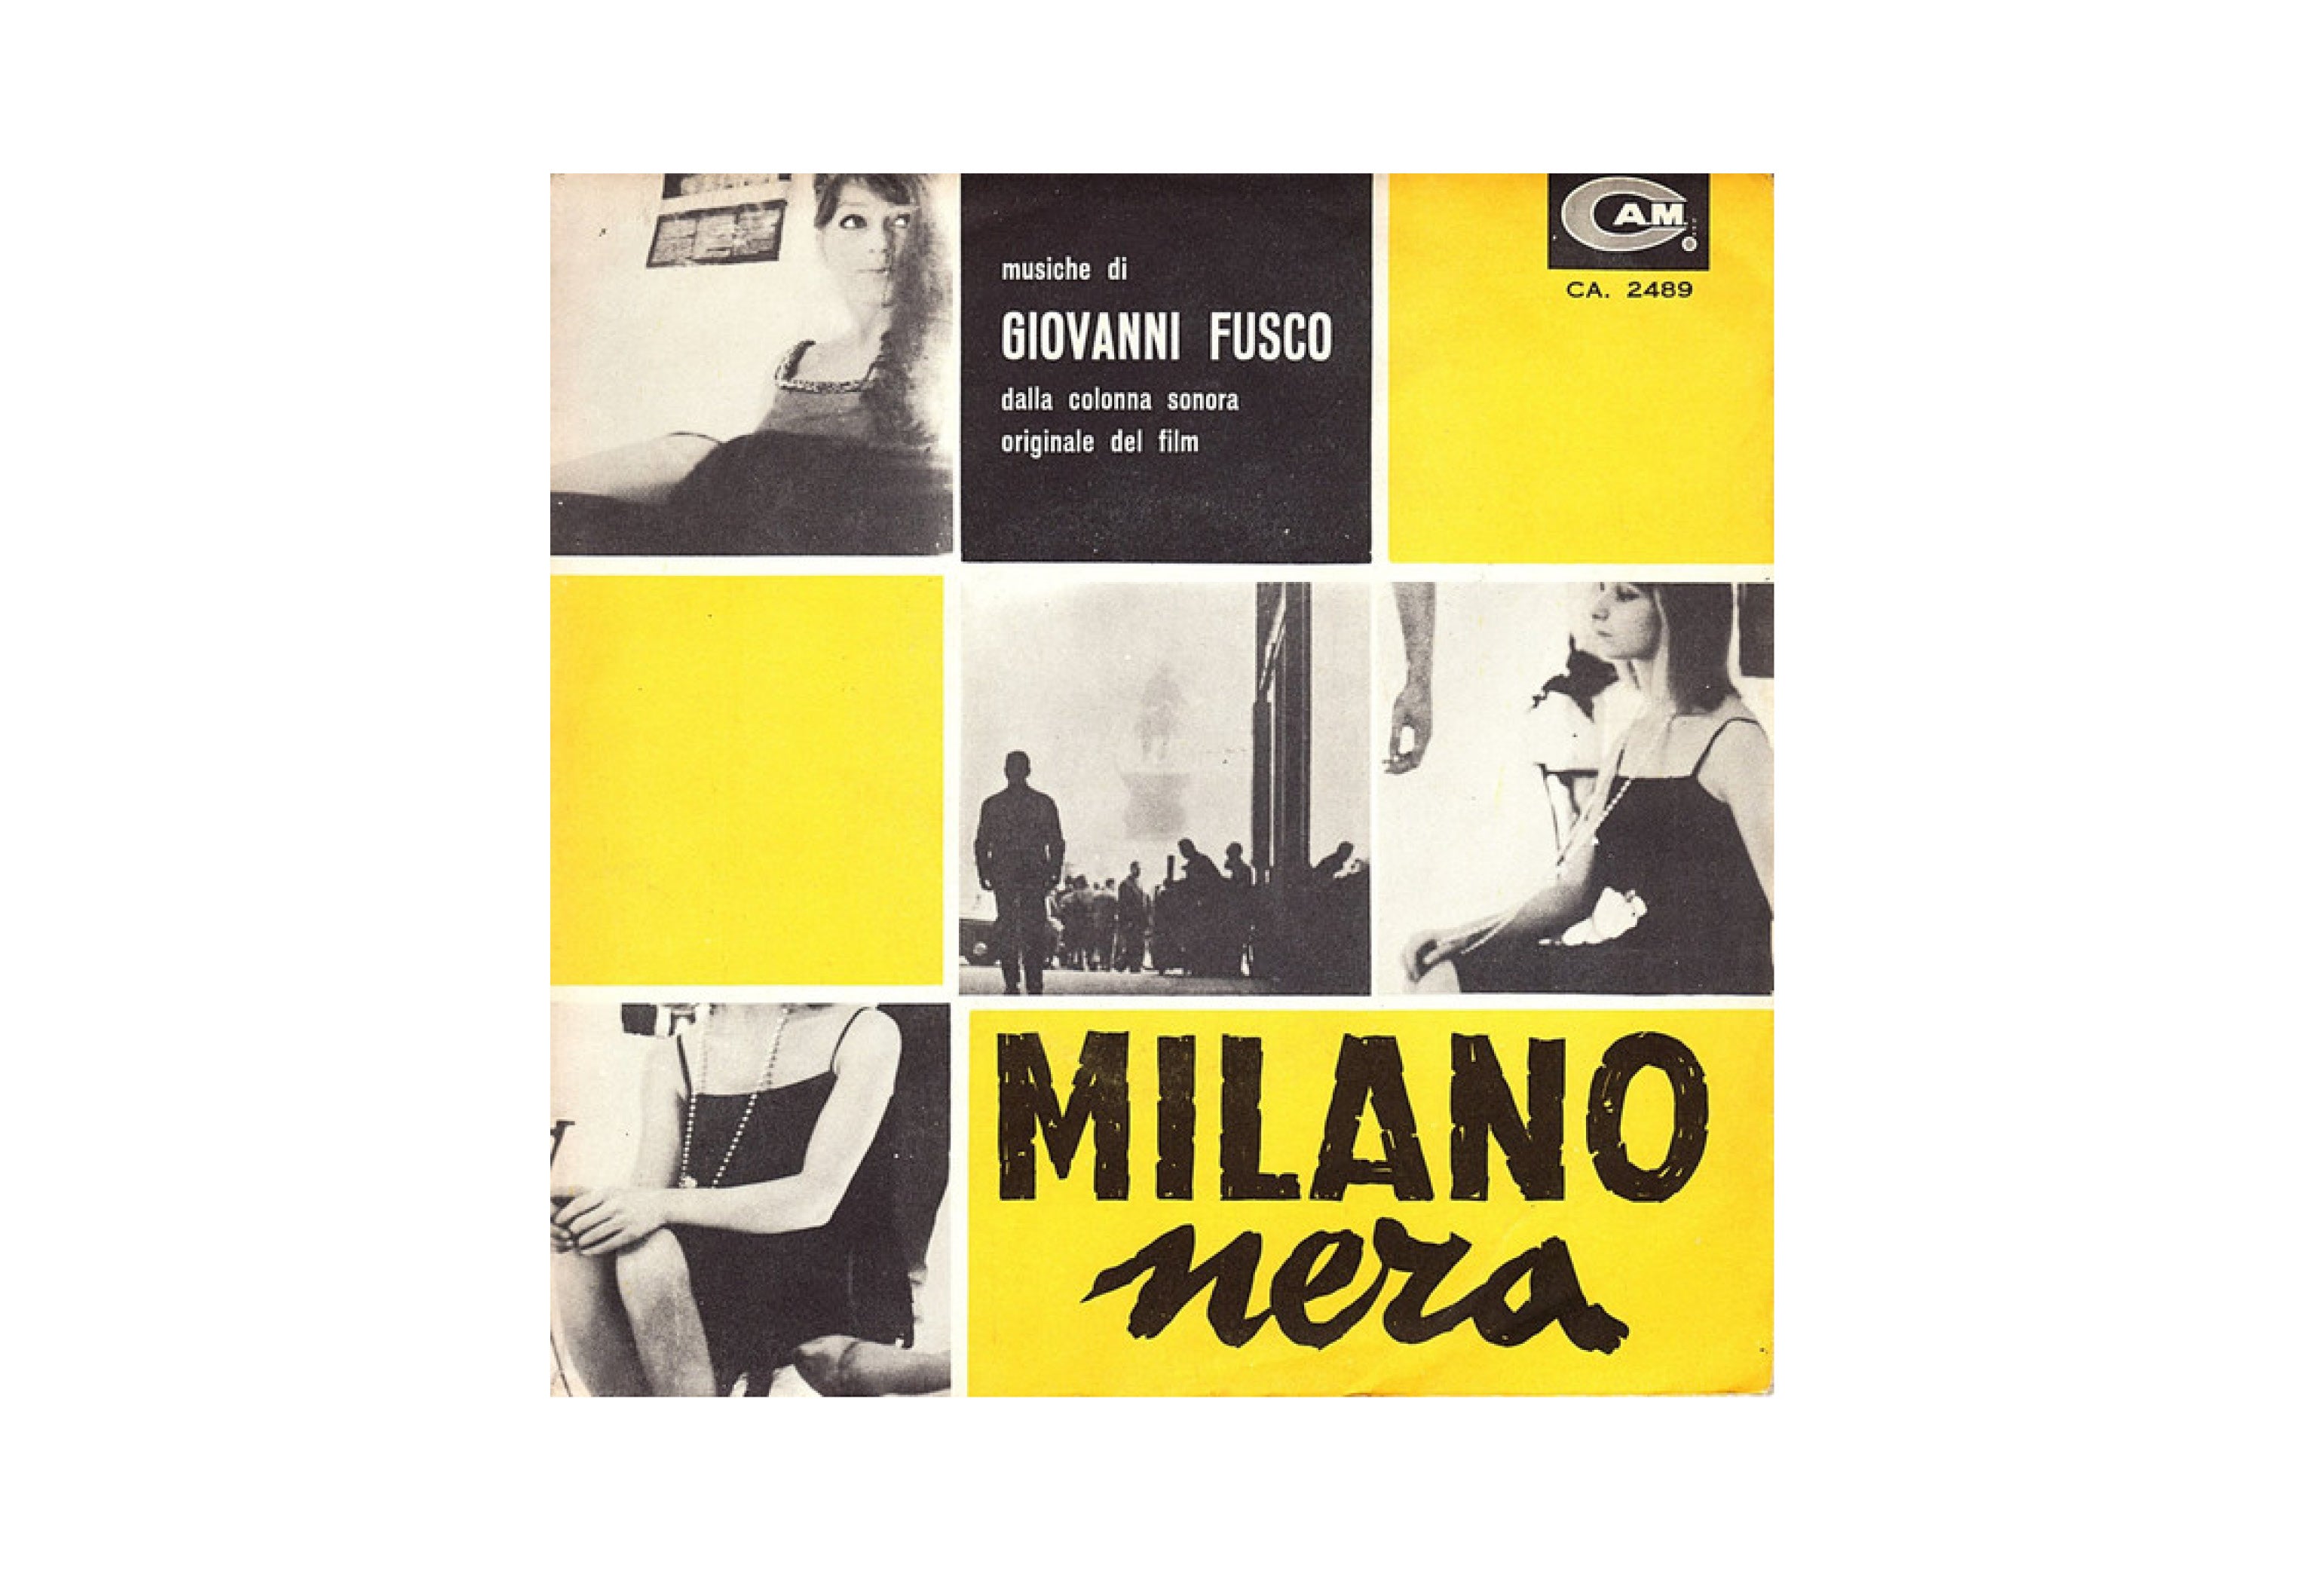 The original CAM 45rpm for Milano nera, music by Giovanni Fusco